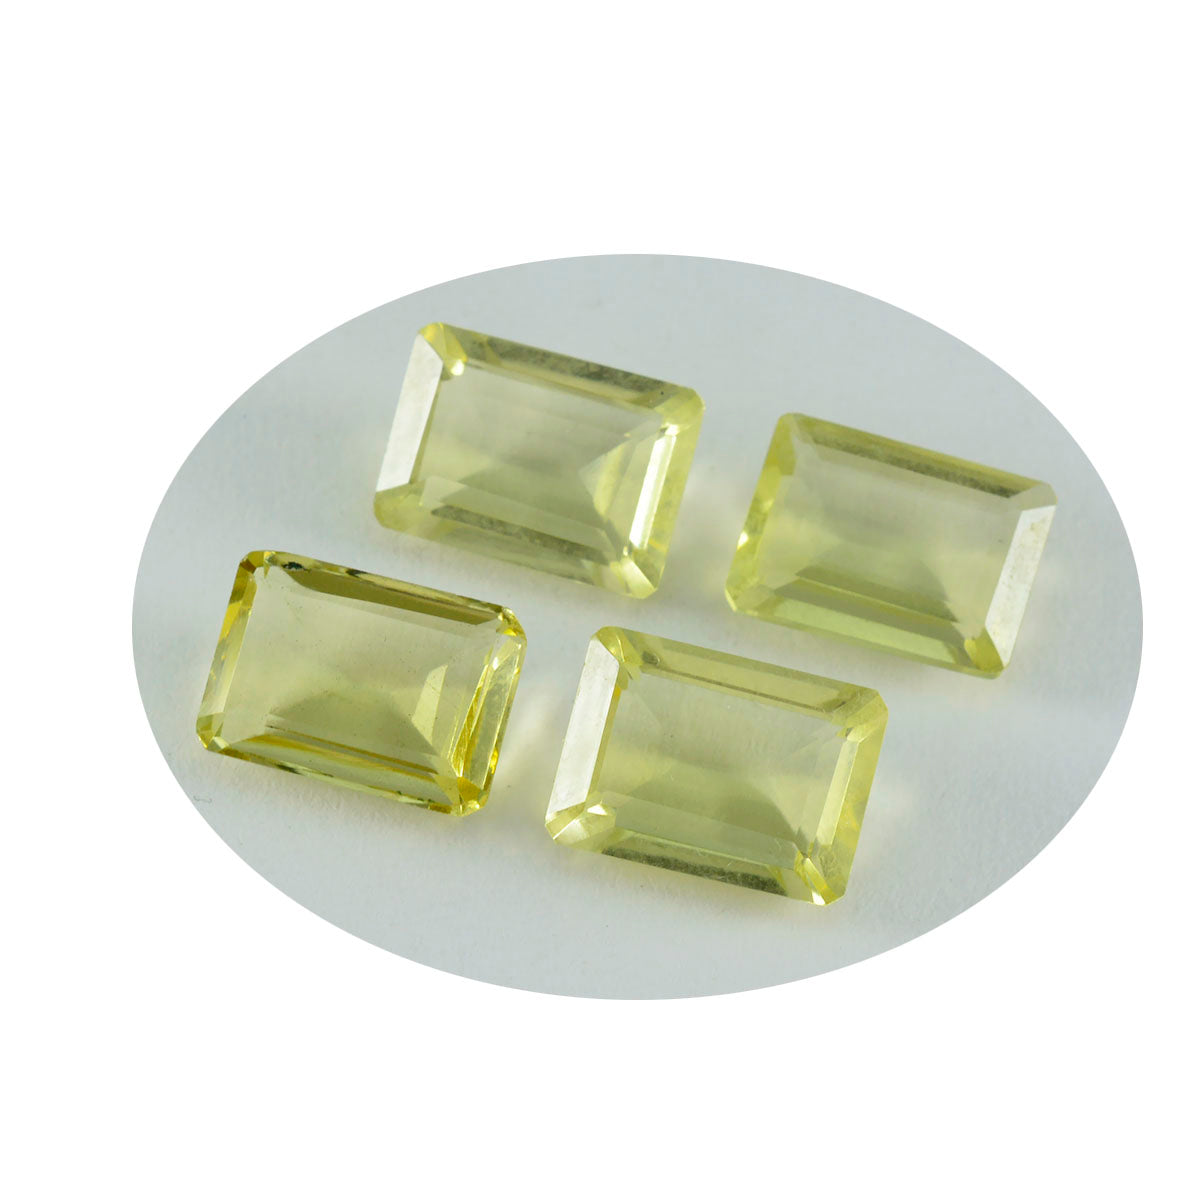 riyogems 1шт желтый лимонный кварц ограненный 10x12 мм восьмиугольная форма привлекательный качественный драгоценный камень